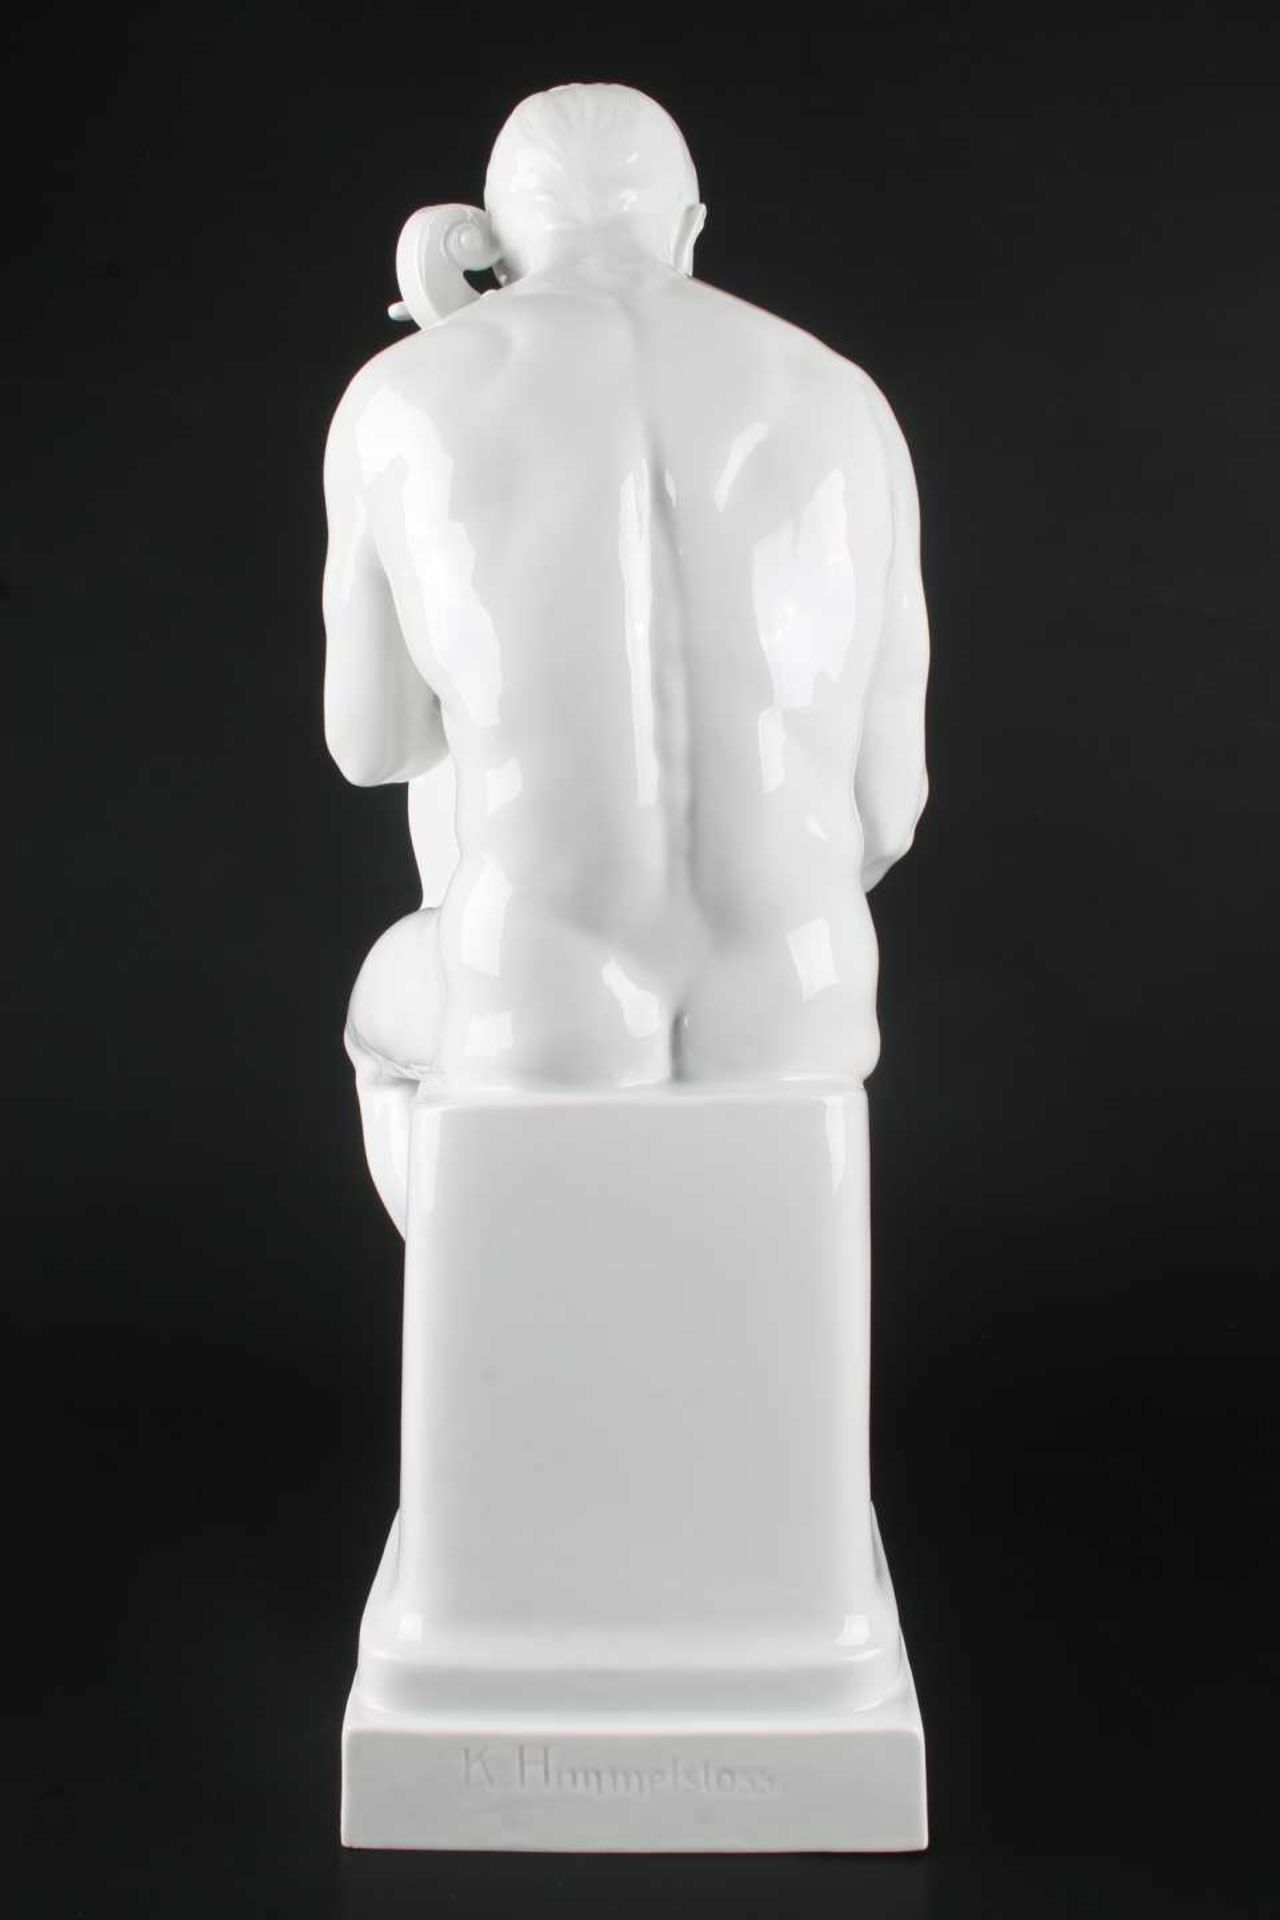 Rosenthal große Porzellanfigur Träumerei von Karl Himmelstoss, porcelain sculpture dreamery, - Bild 4 aus 9